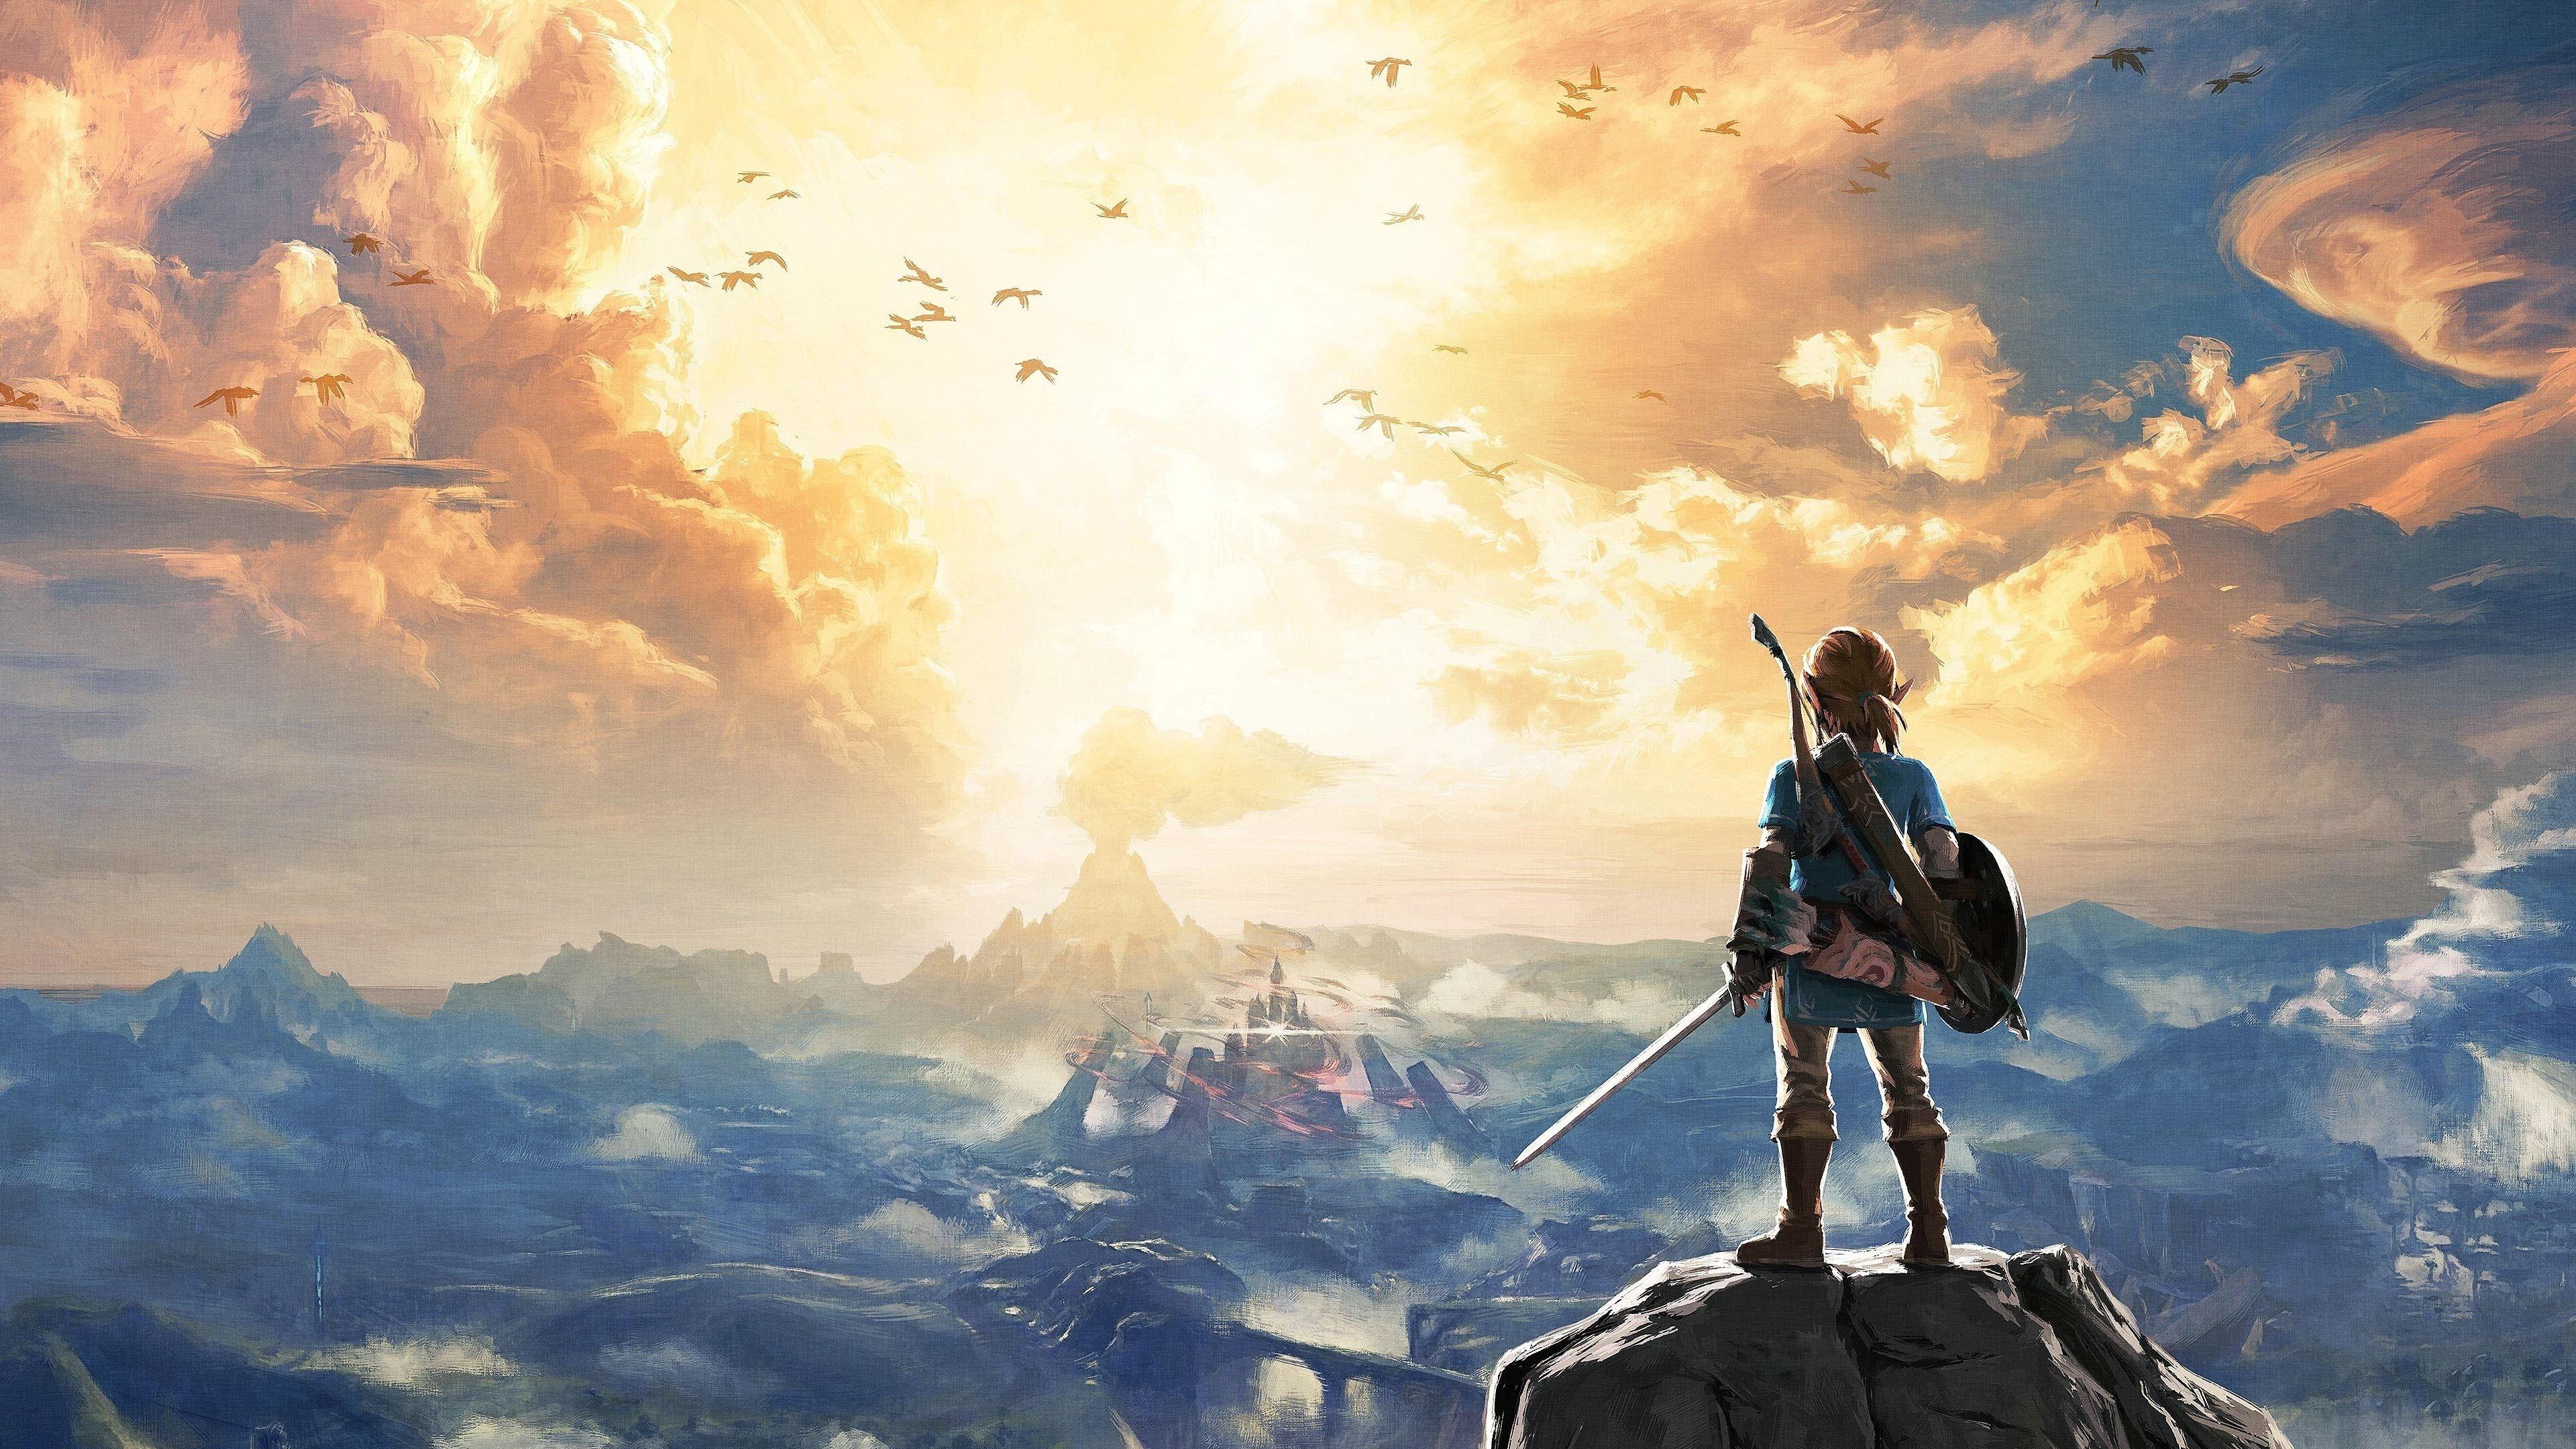 Zelda 4k Wallpapers - Top Free Zelda 4k Backgrounds - WallpaperAccess